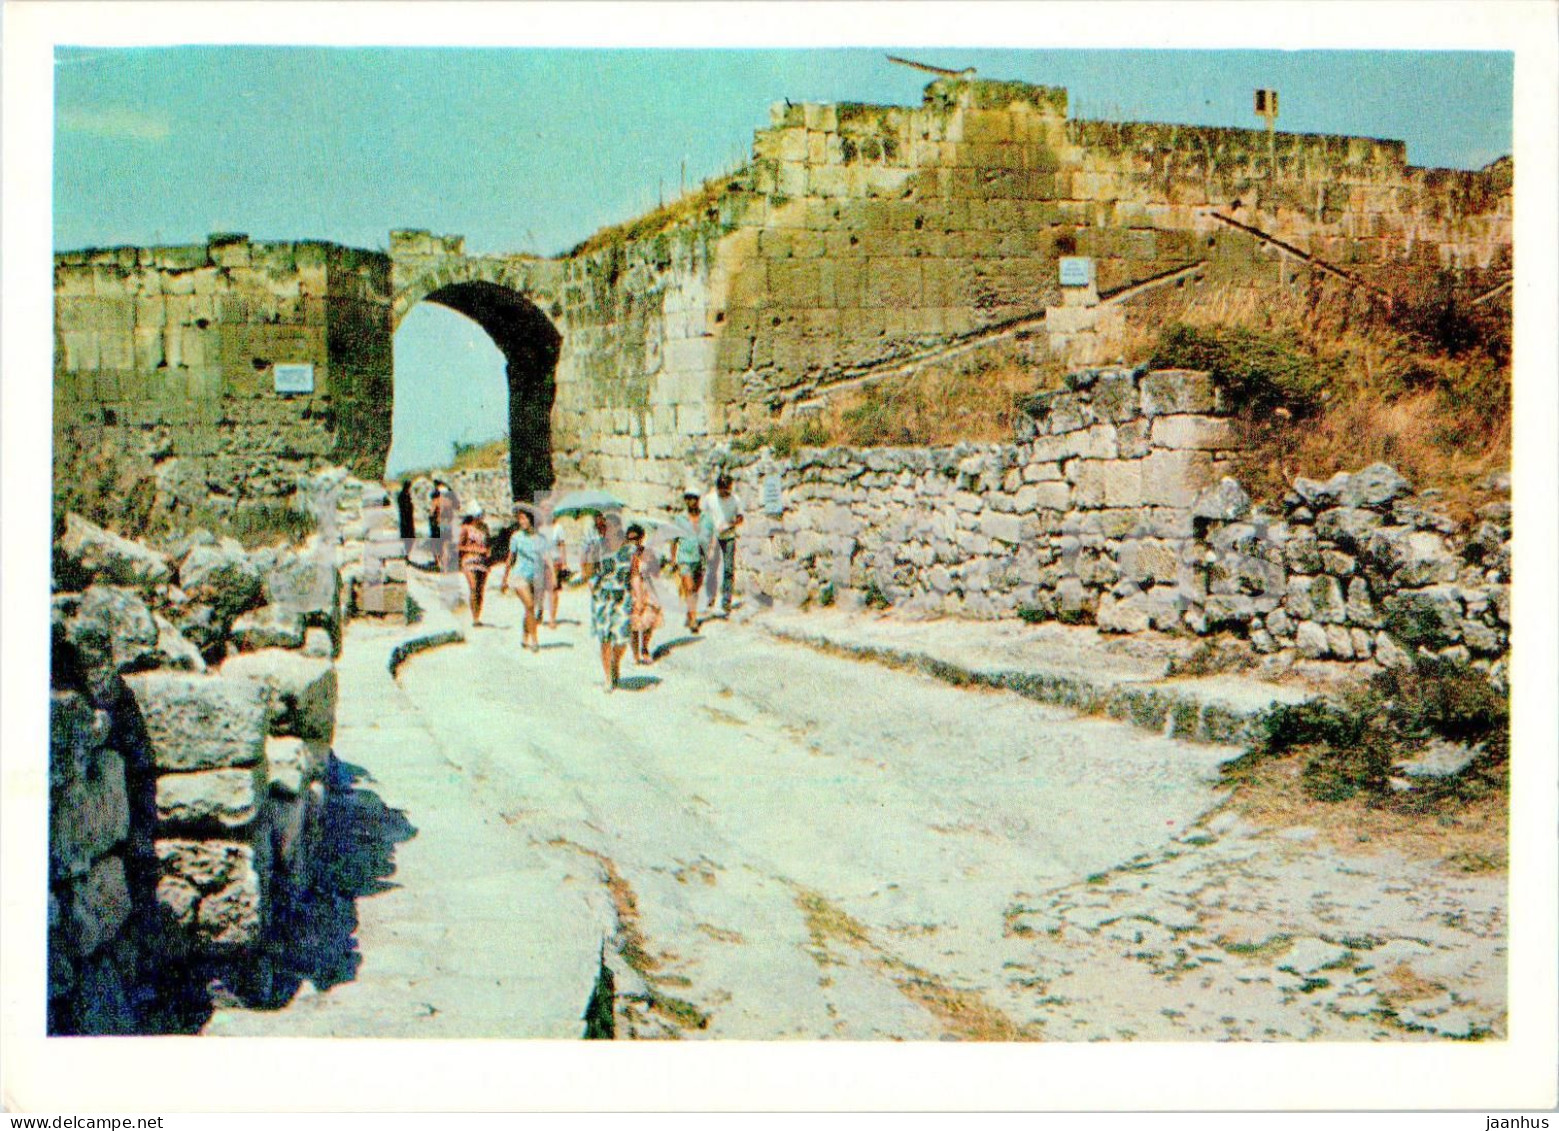 Bakhchisaray Historical Museum - Chufut-Kale - Middle Fortress Wall - Crimea - 1973 - Ukraine USSR - Unused - Ukraine